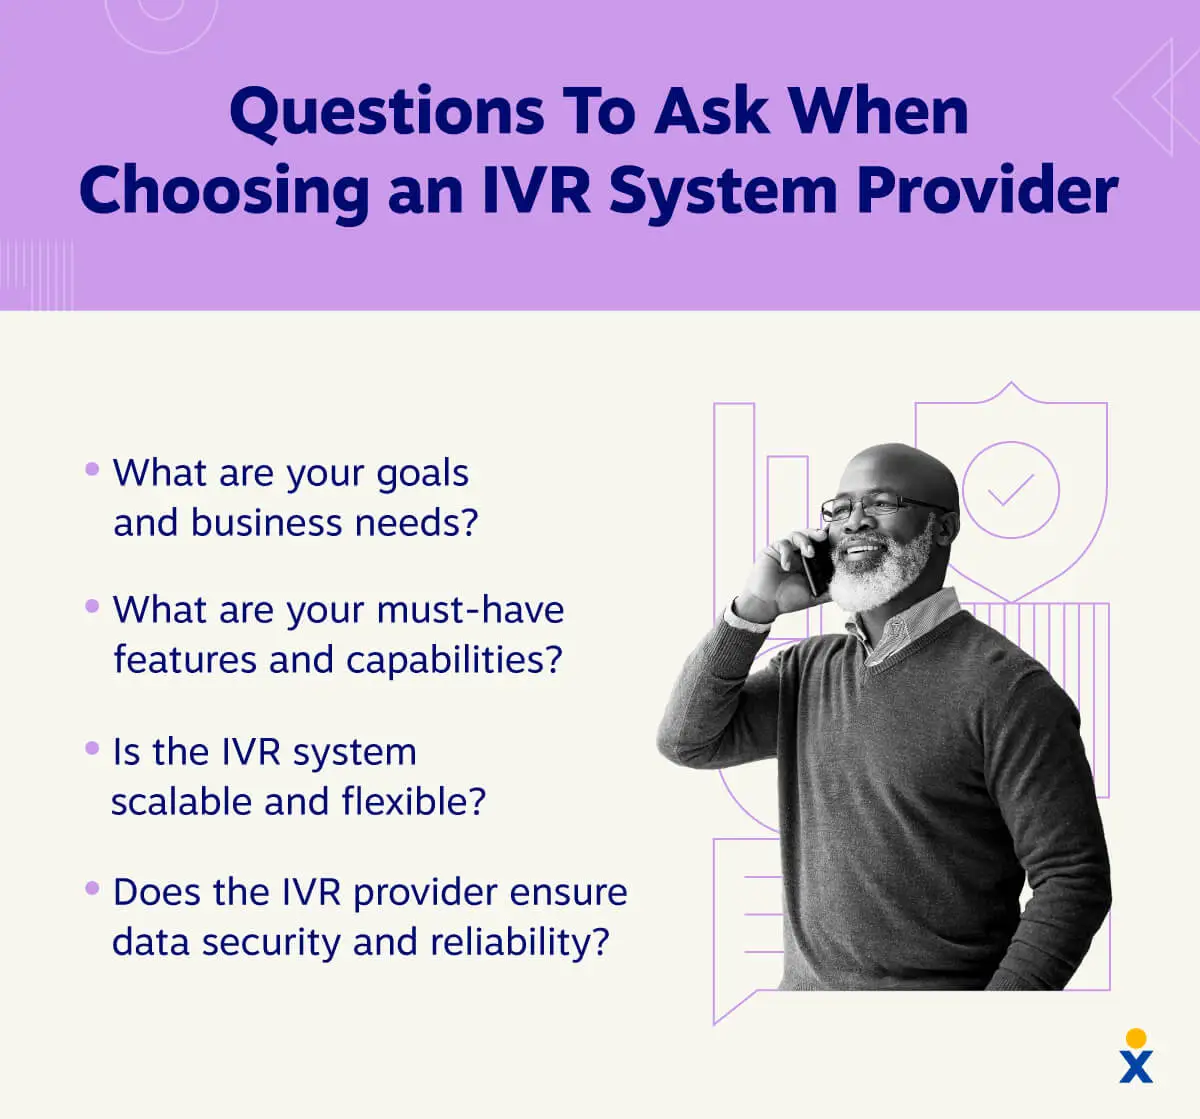 一個打電話的人站在選擇最佳 IVR 系統提供者時要詢問的問題清單旁邊。